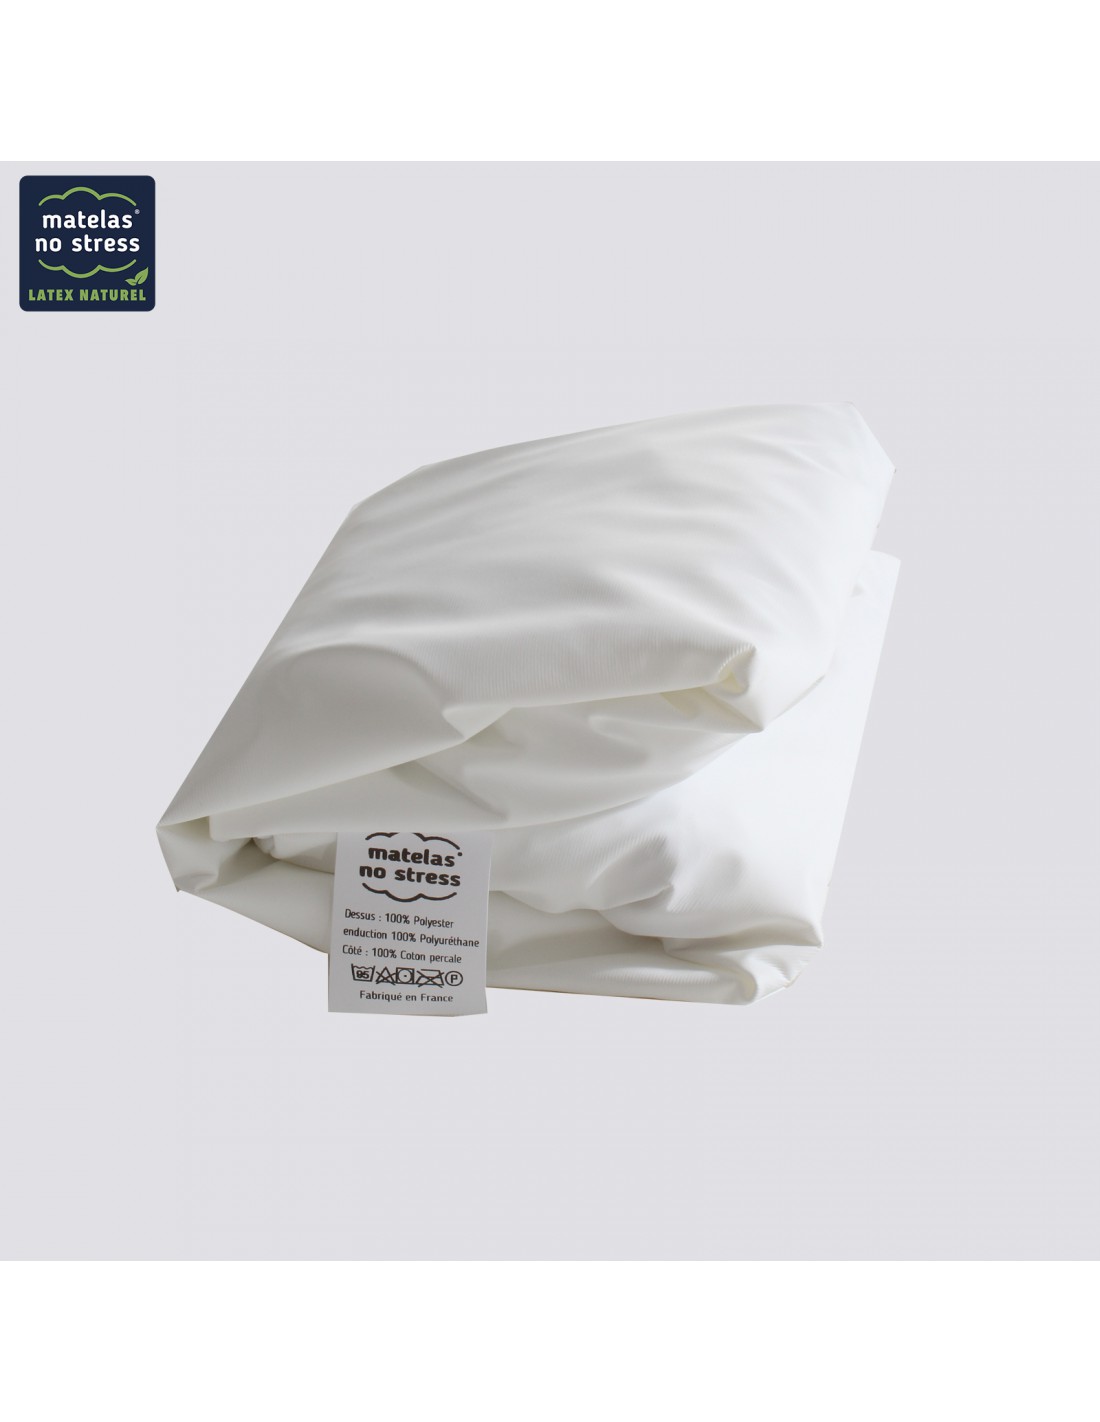 Alèse protège matelas respirante en coton blanc 120x190 cm